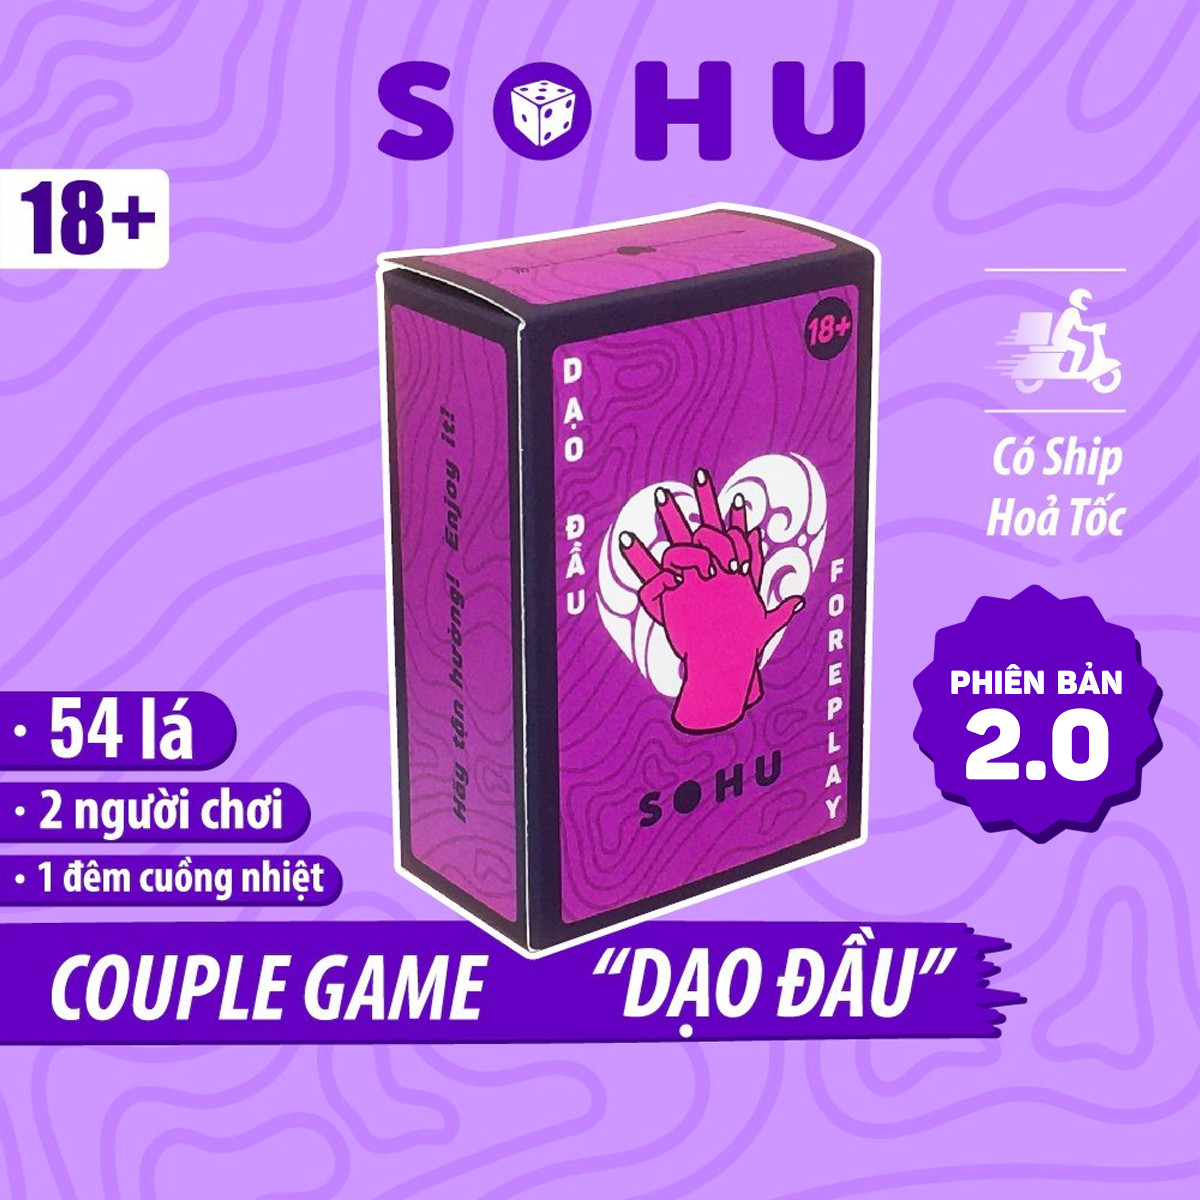 Bộ bài drinking game Dạo Đầu SOHU cho cặp đôi hẹn hò 54 lá